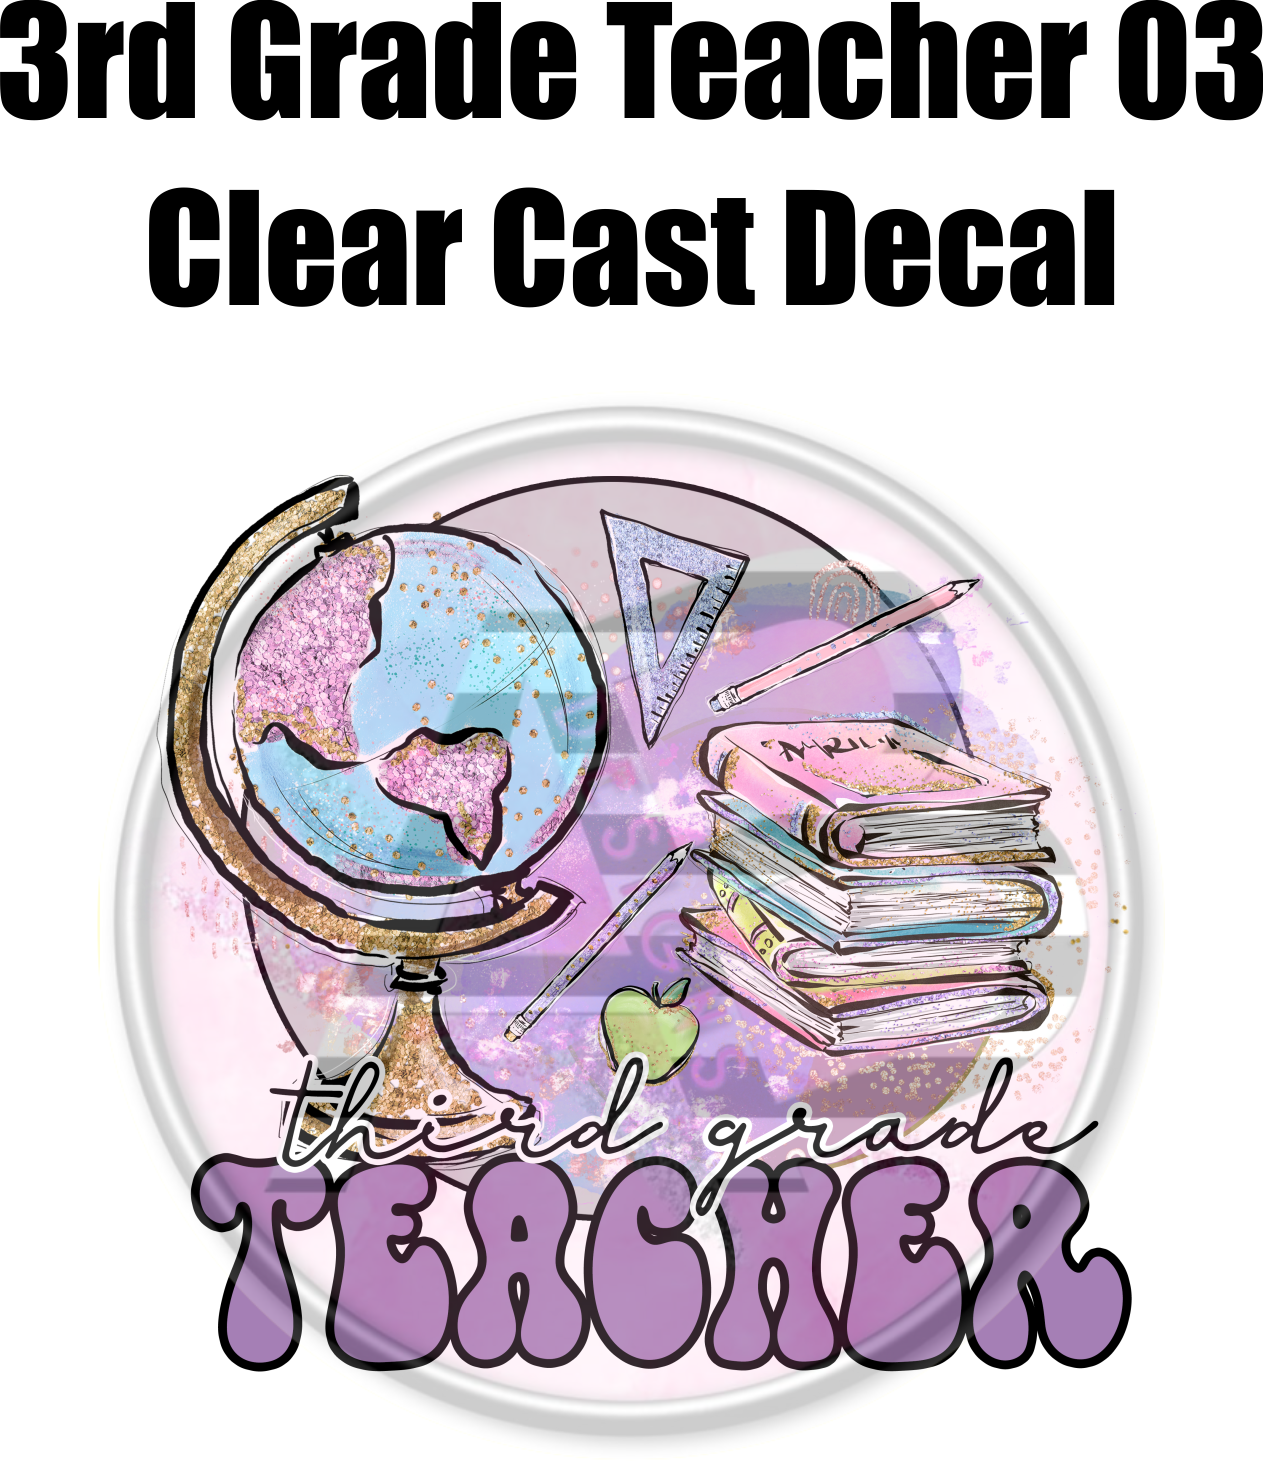 3rd Grade Teacher 03 - Clear Cast Decal - 55